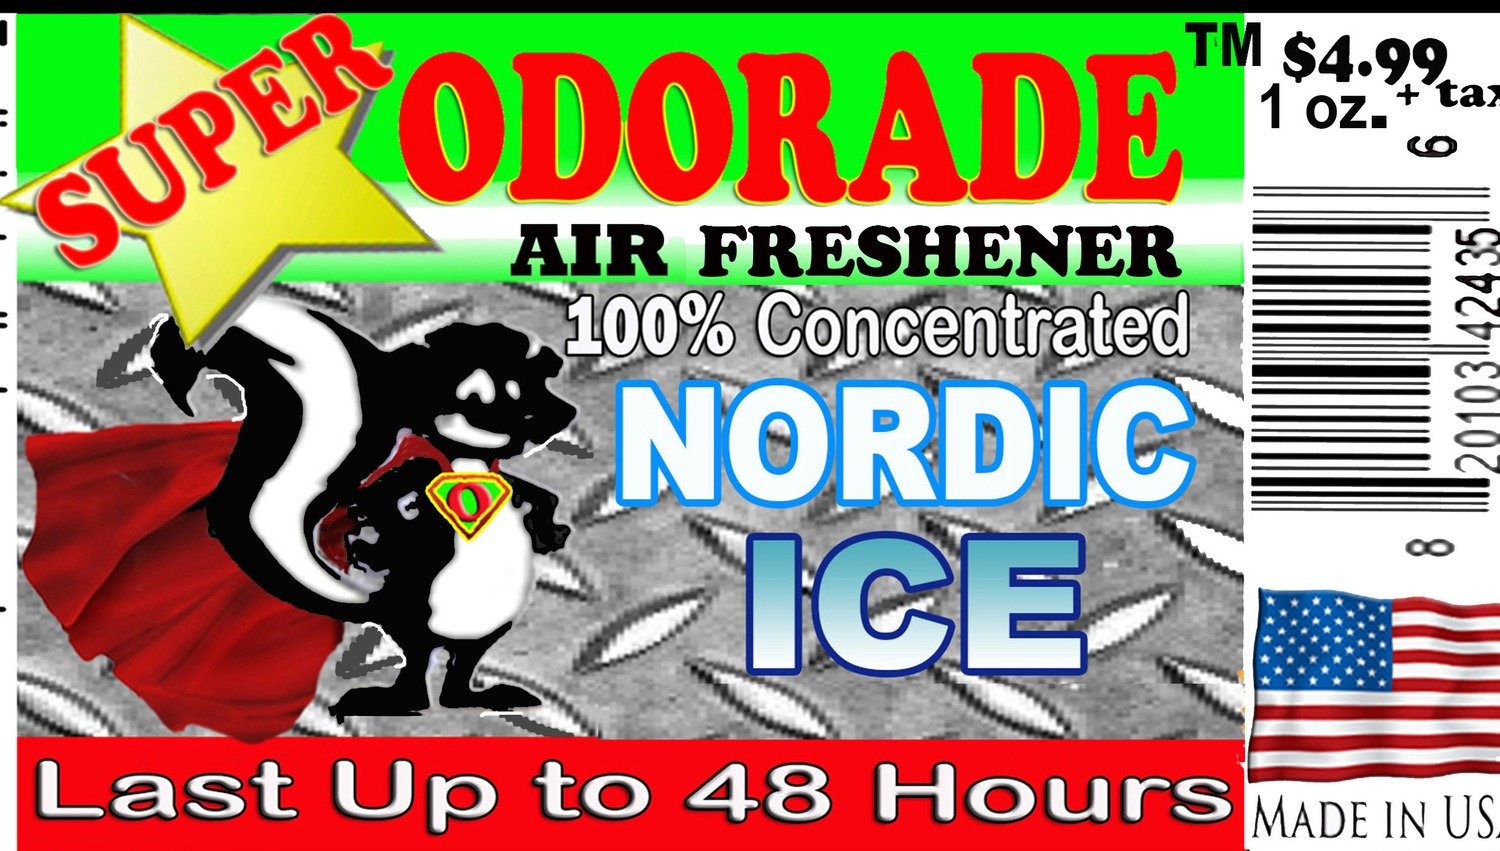 Nordic Ice